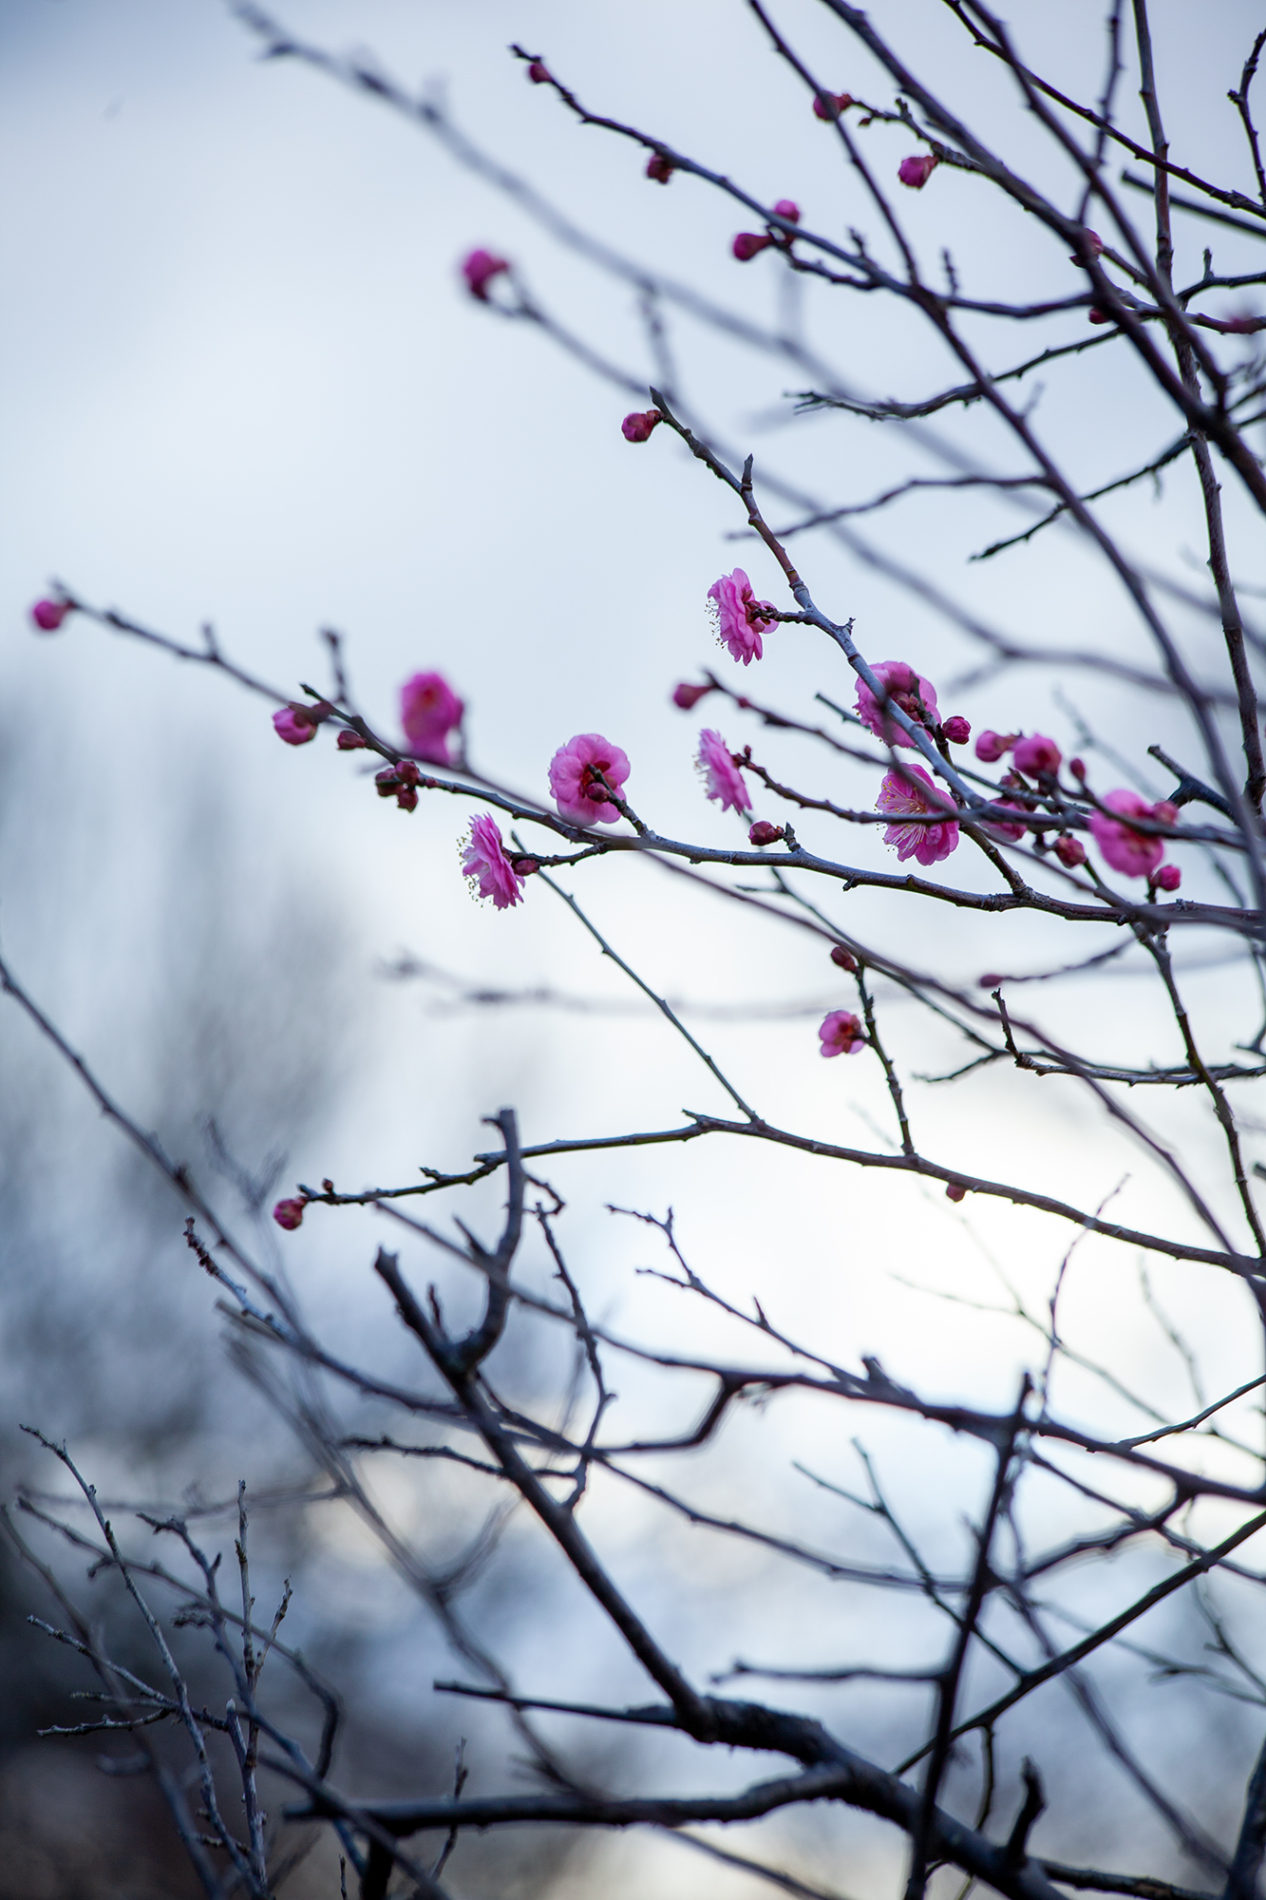 ピンクの梅の花の写真